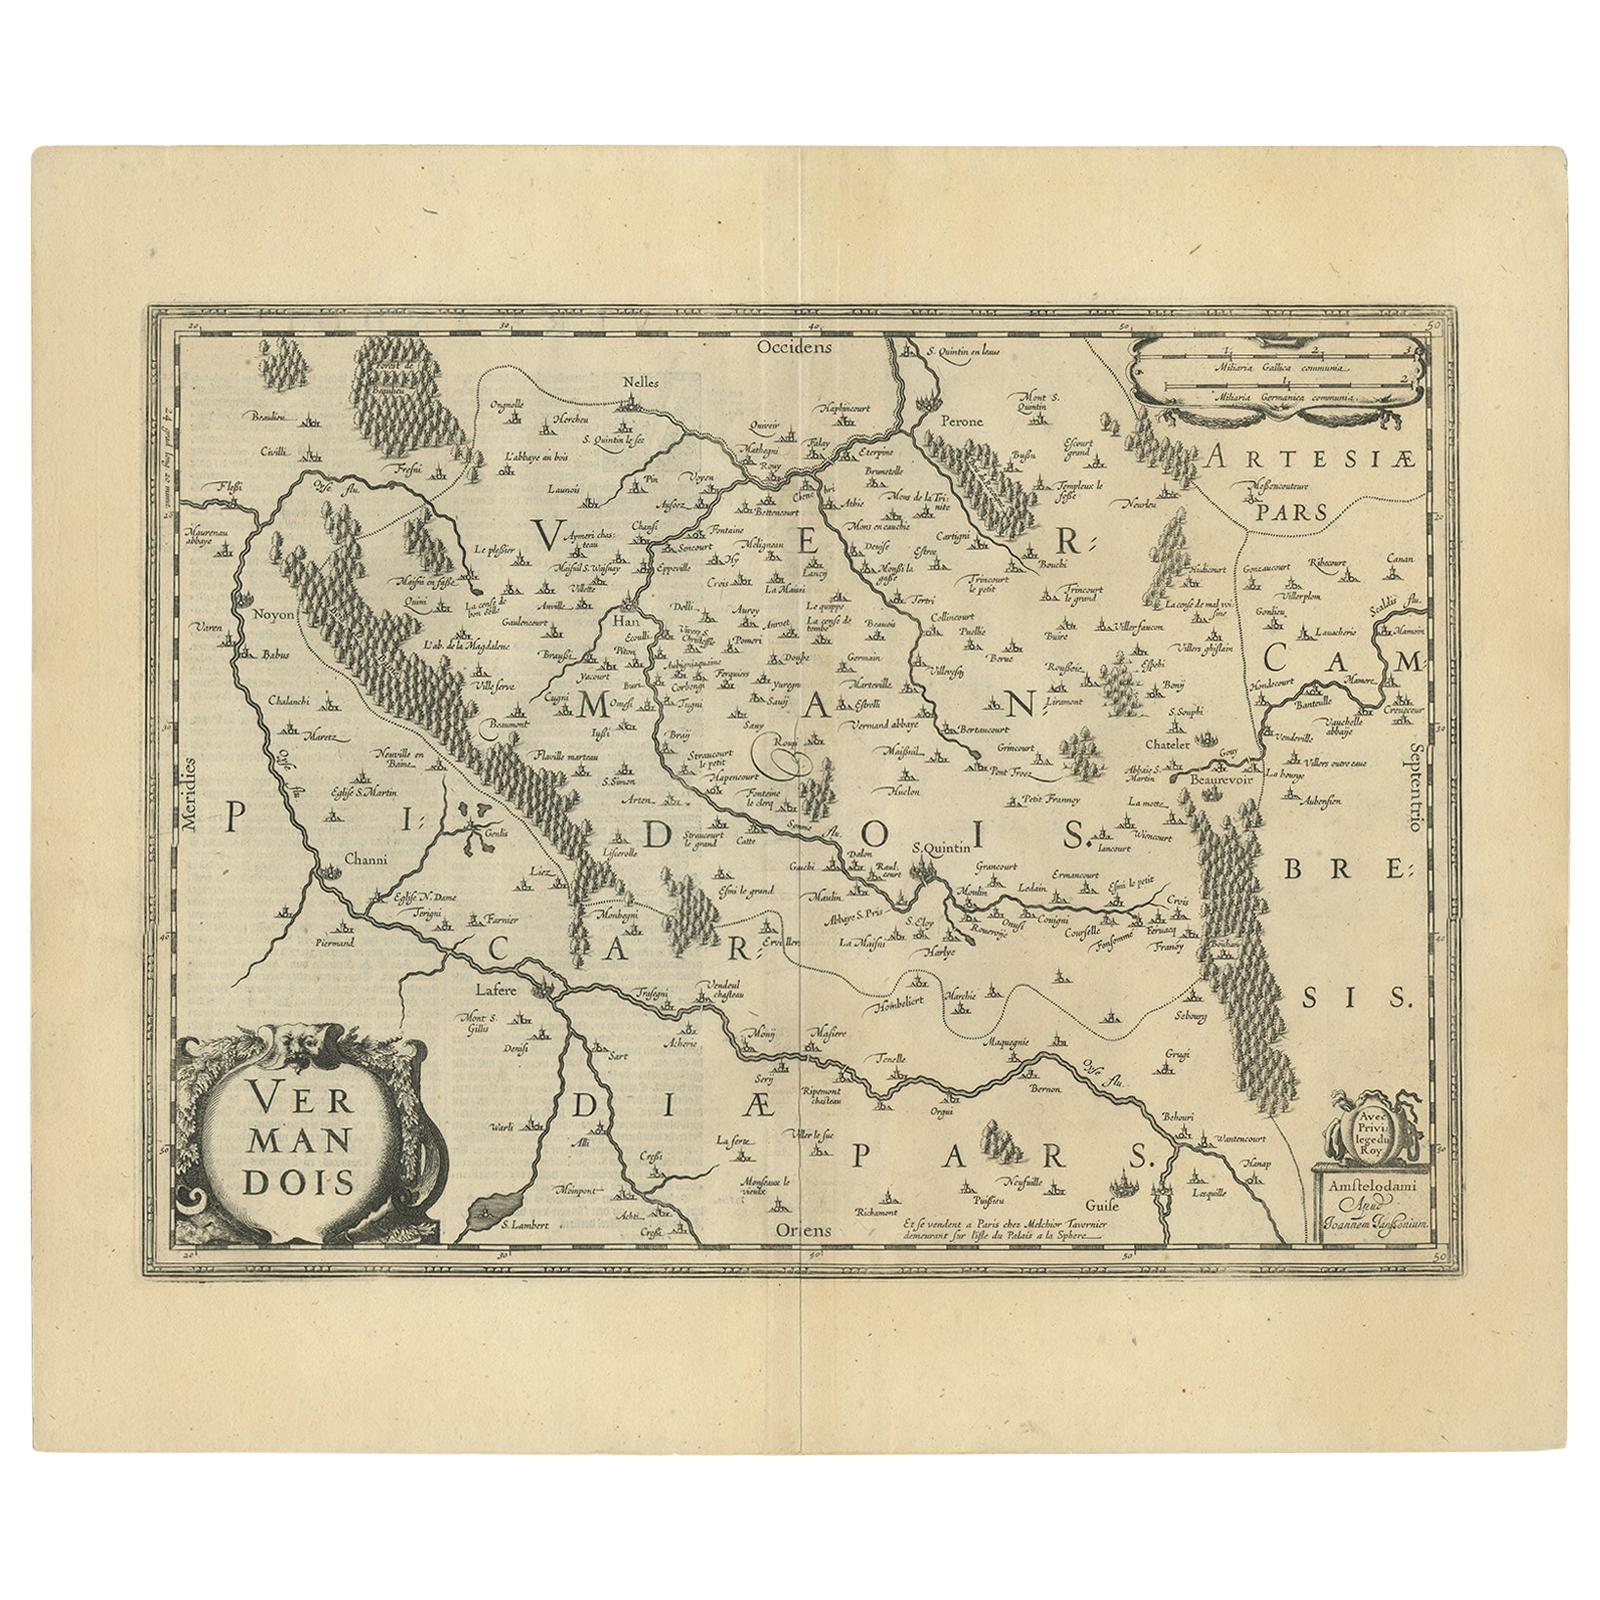 Antique Map of the Vermandois Region by Janssonius, circa 1650